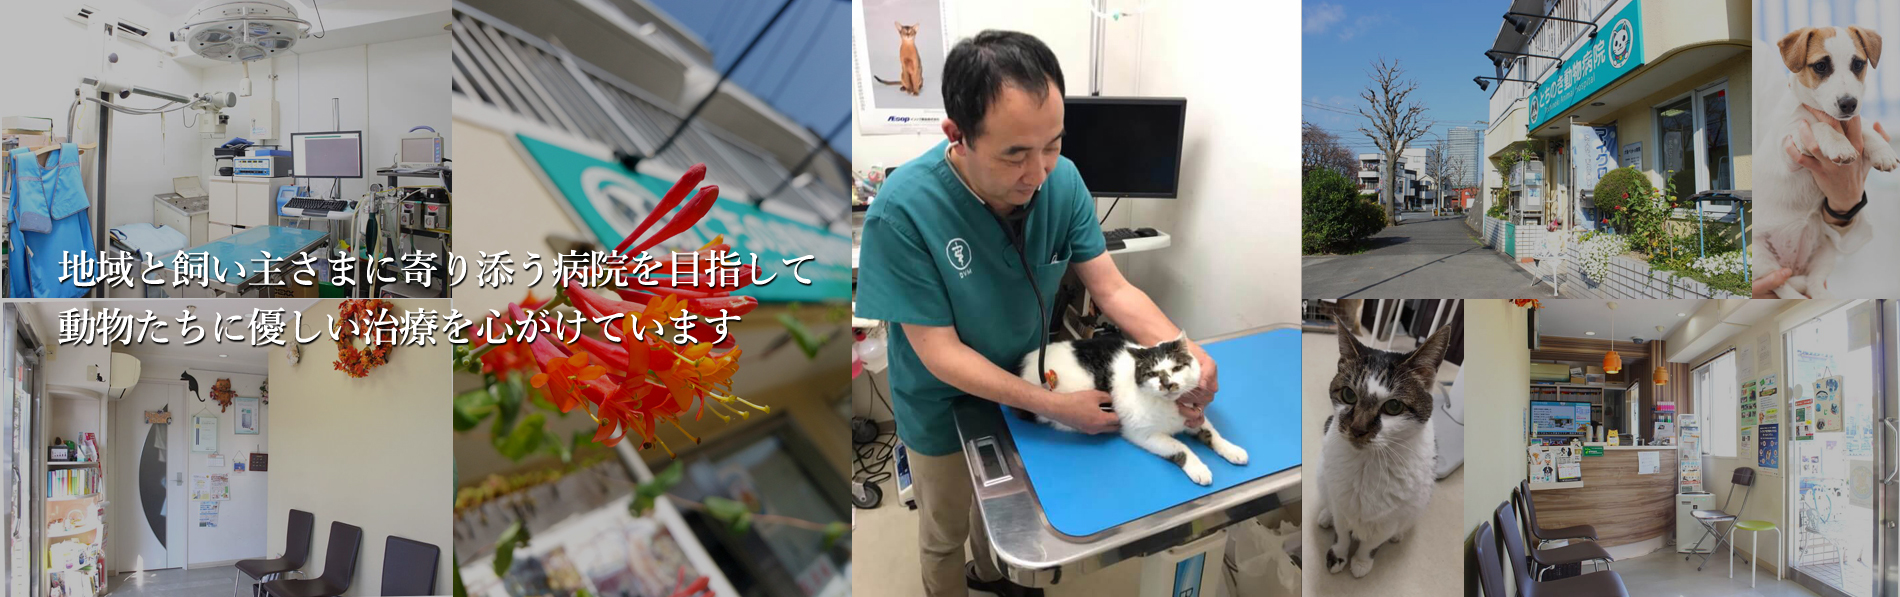 東京八王子駅 犬や猫の避妊手術なら とちのき動物病院 東京八王子駅エリアの動物病院 とちのき動物病院 犬のトリミングも行っております